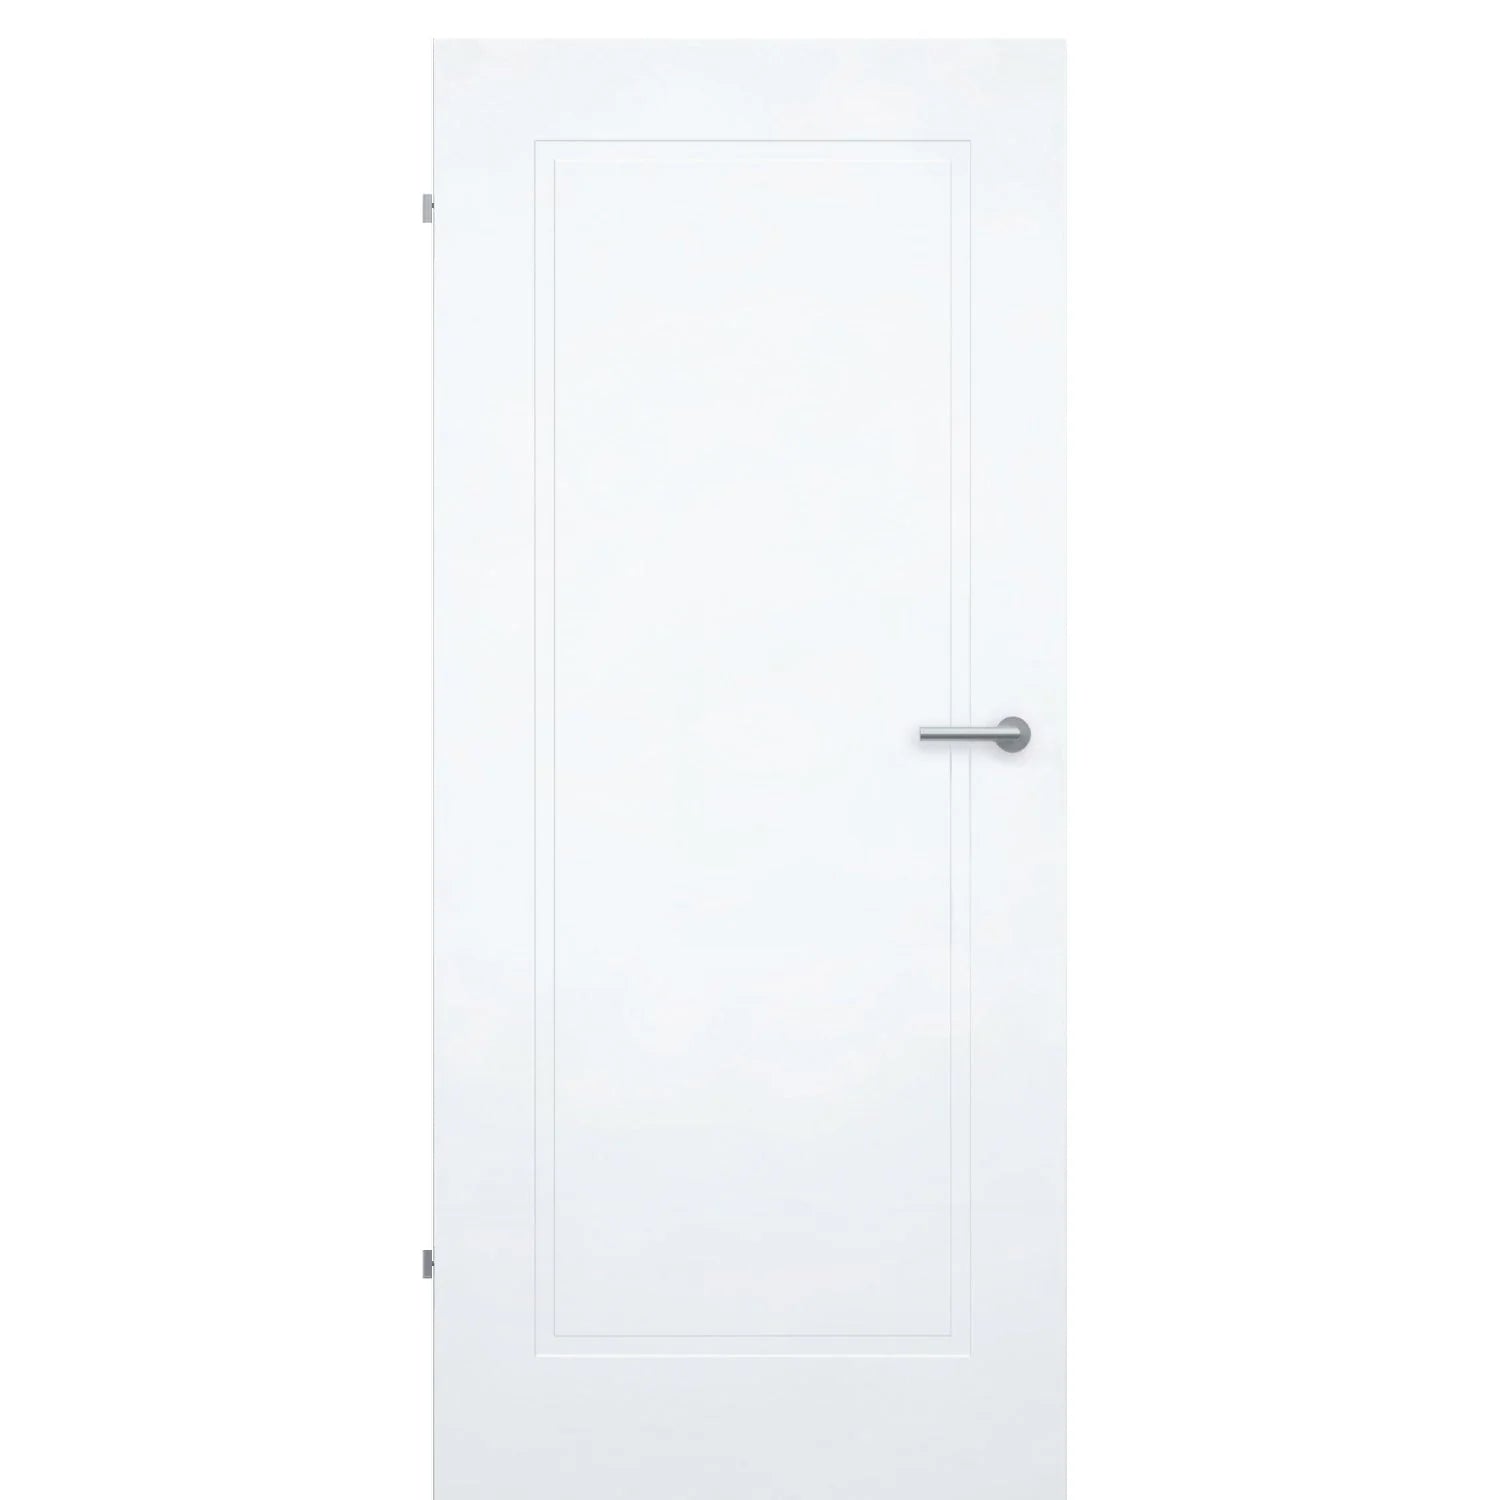 Zimmertür ohne Schlüssellochbohrung brillant-weiß Stiltür mit 1 Kassette Designkante - Modell Stiltür M13